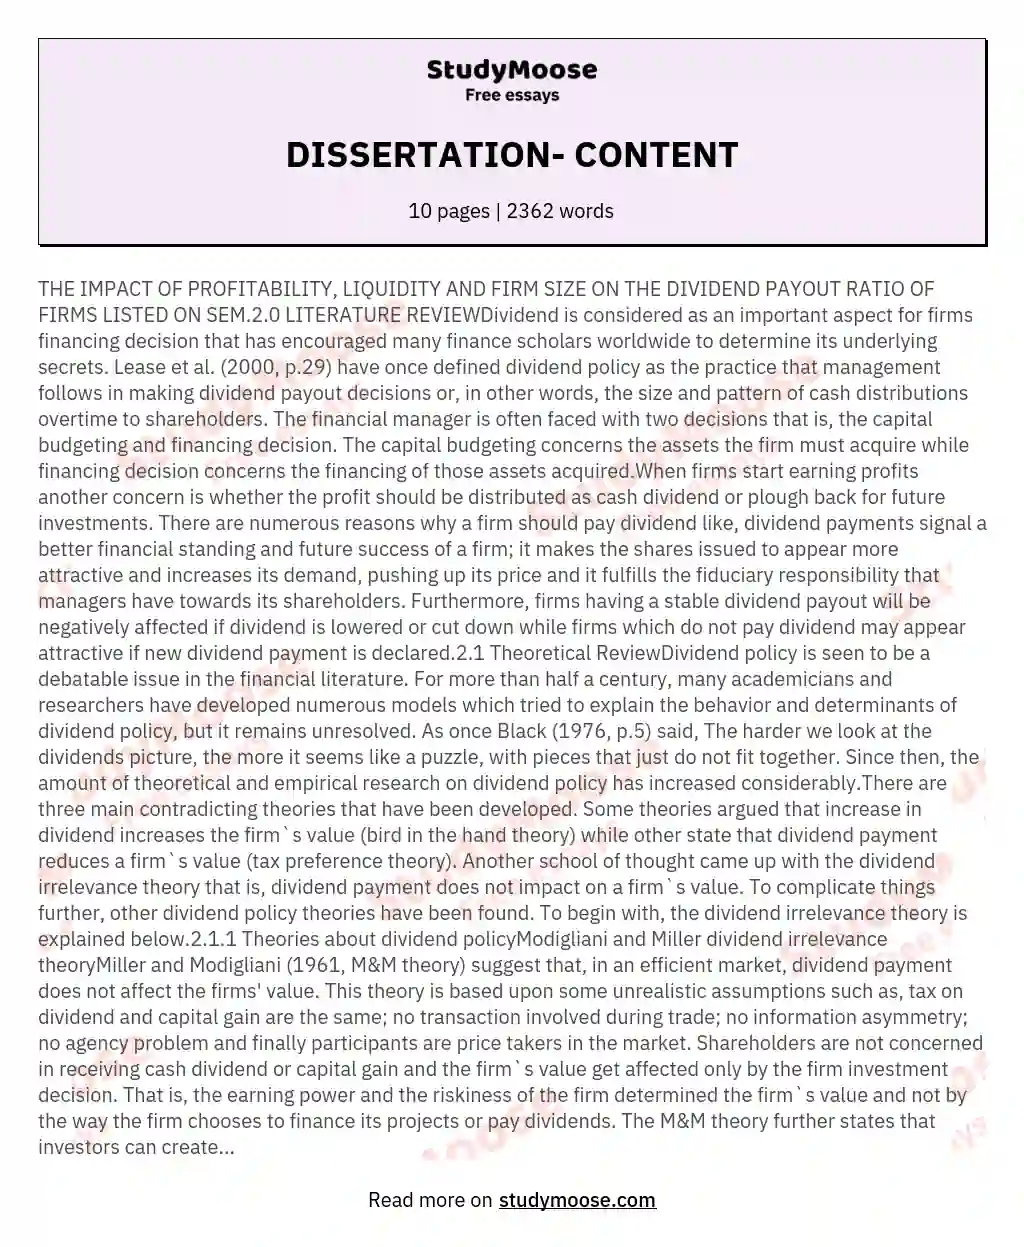 DISSERTATION- CONTENT essay